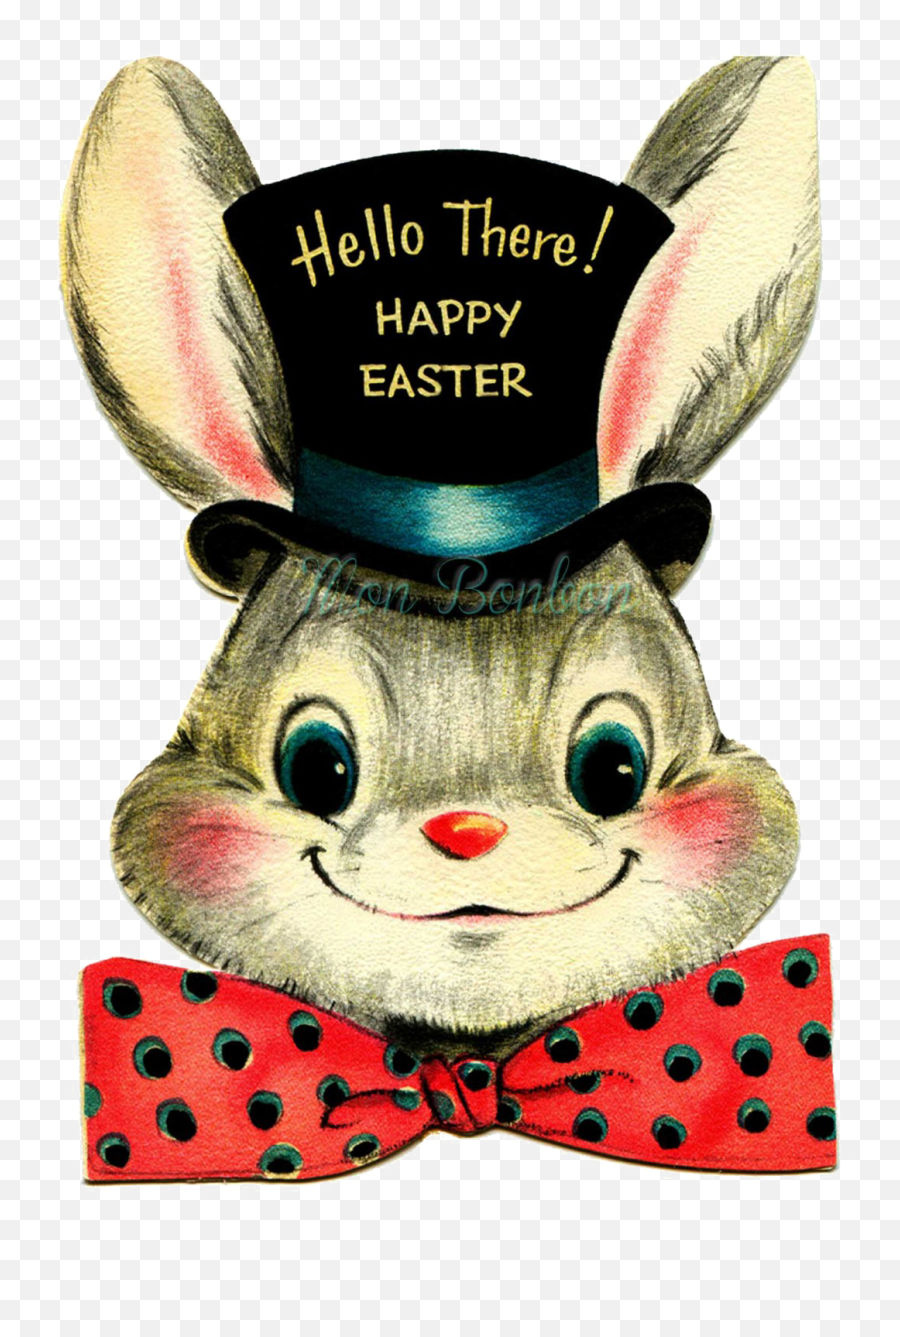 Vintage Easter Transparent Images Png Arts - Retro Vintage Easter Bunny,Vintage Transparent